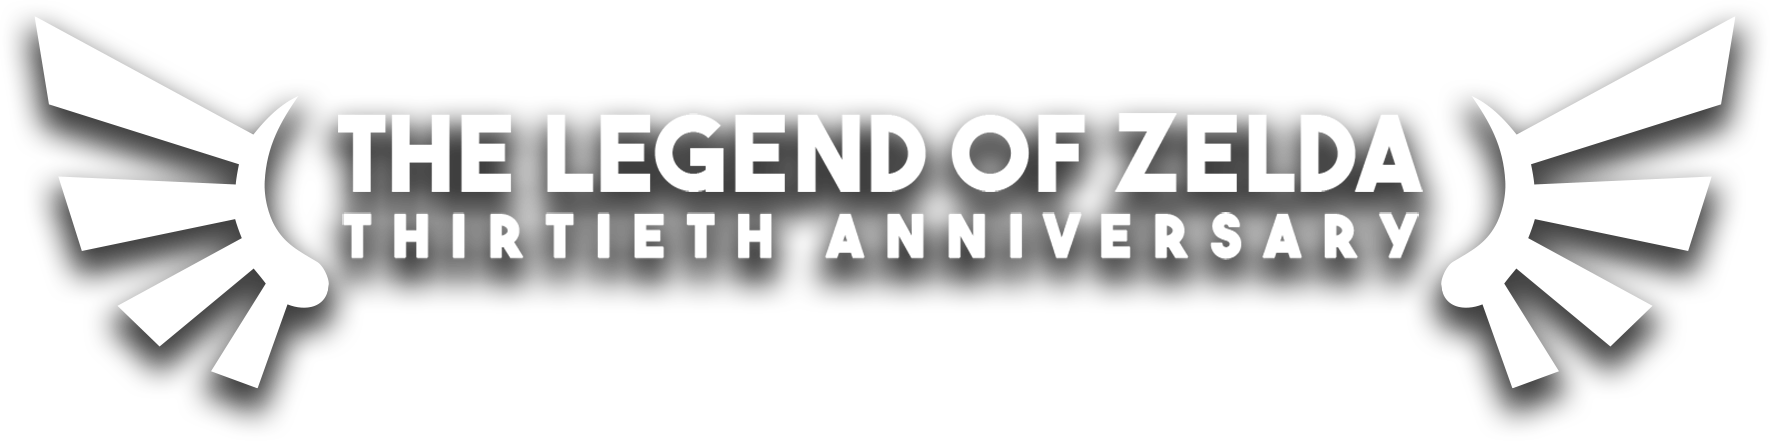 The Legend Of Zelda Thirtieth Anniversary Walkthrough - The Legend Of Zelda (1770x441), Png Download